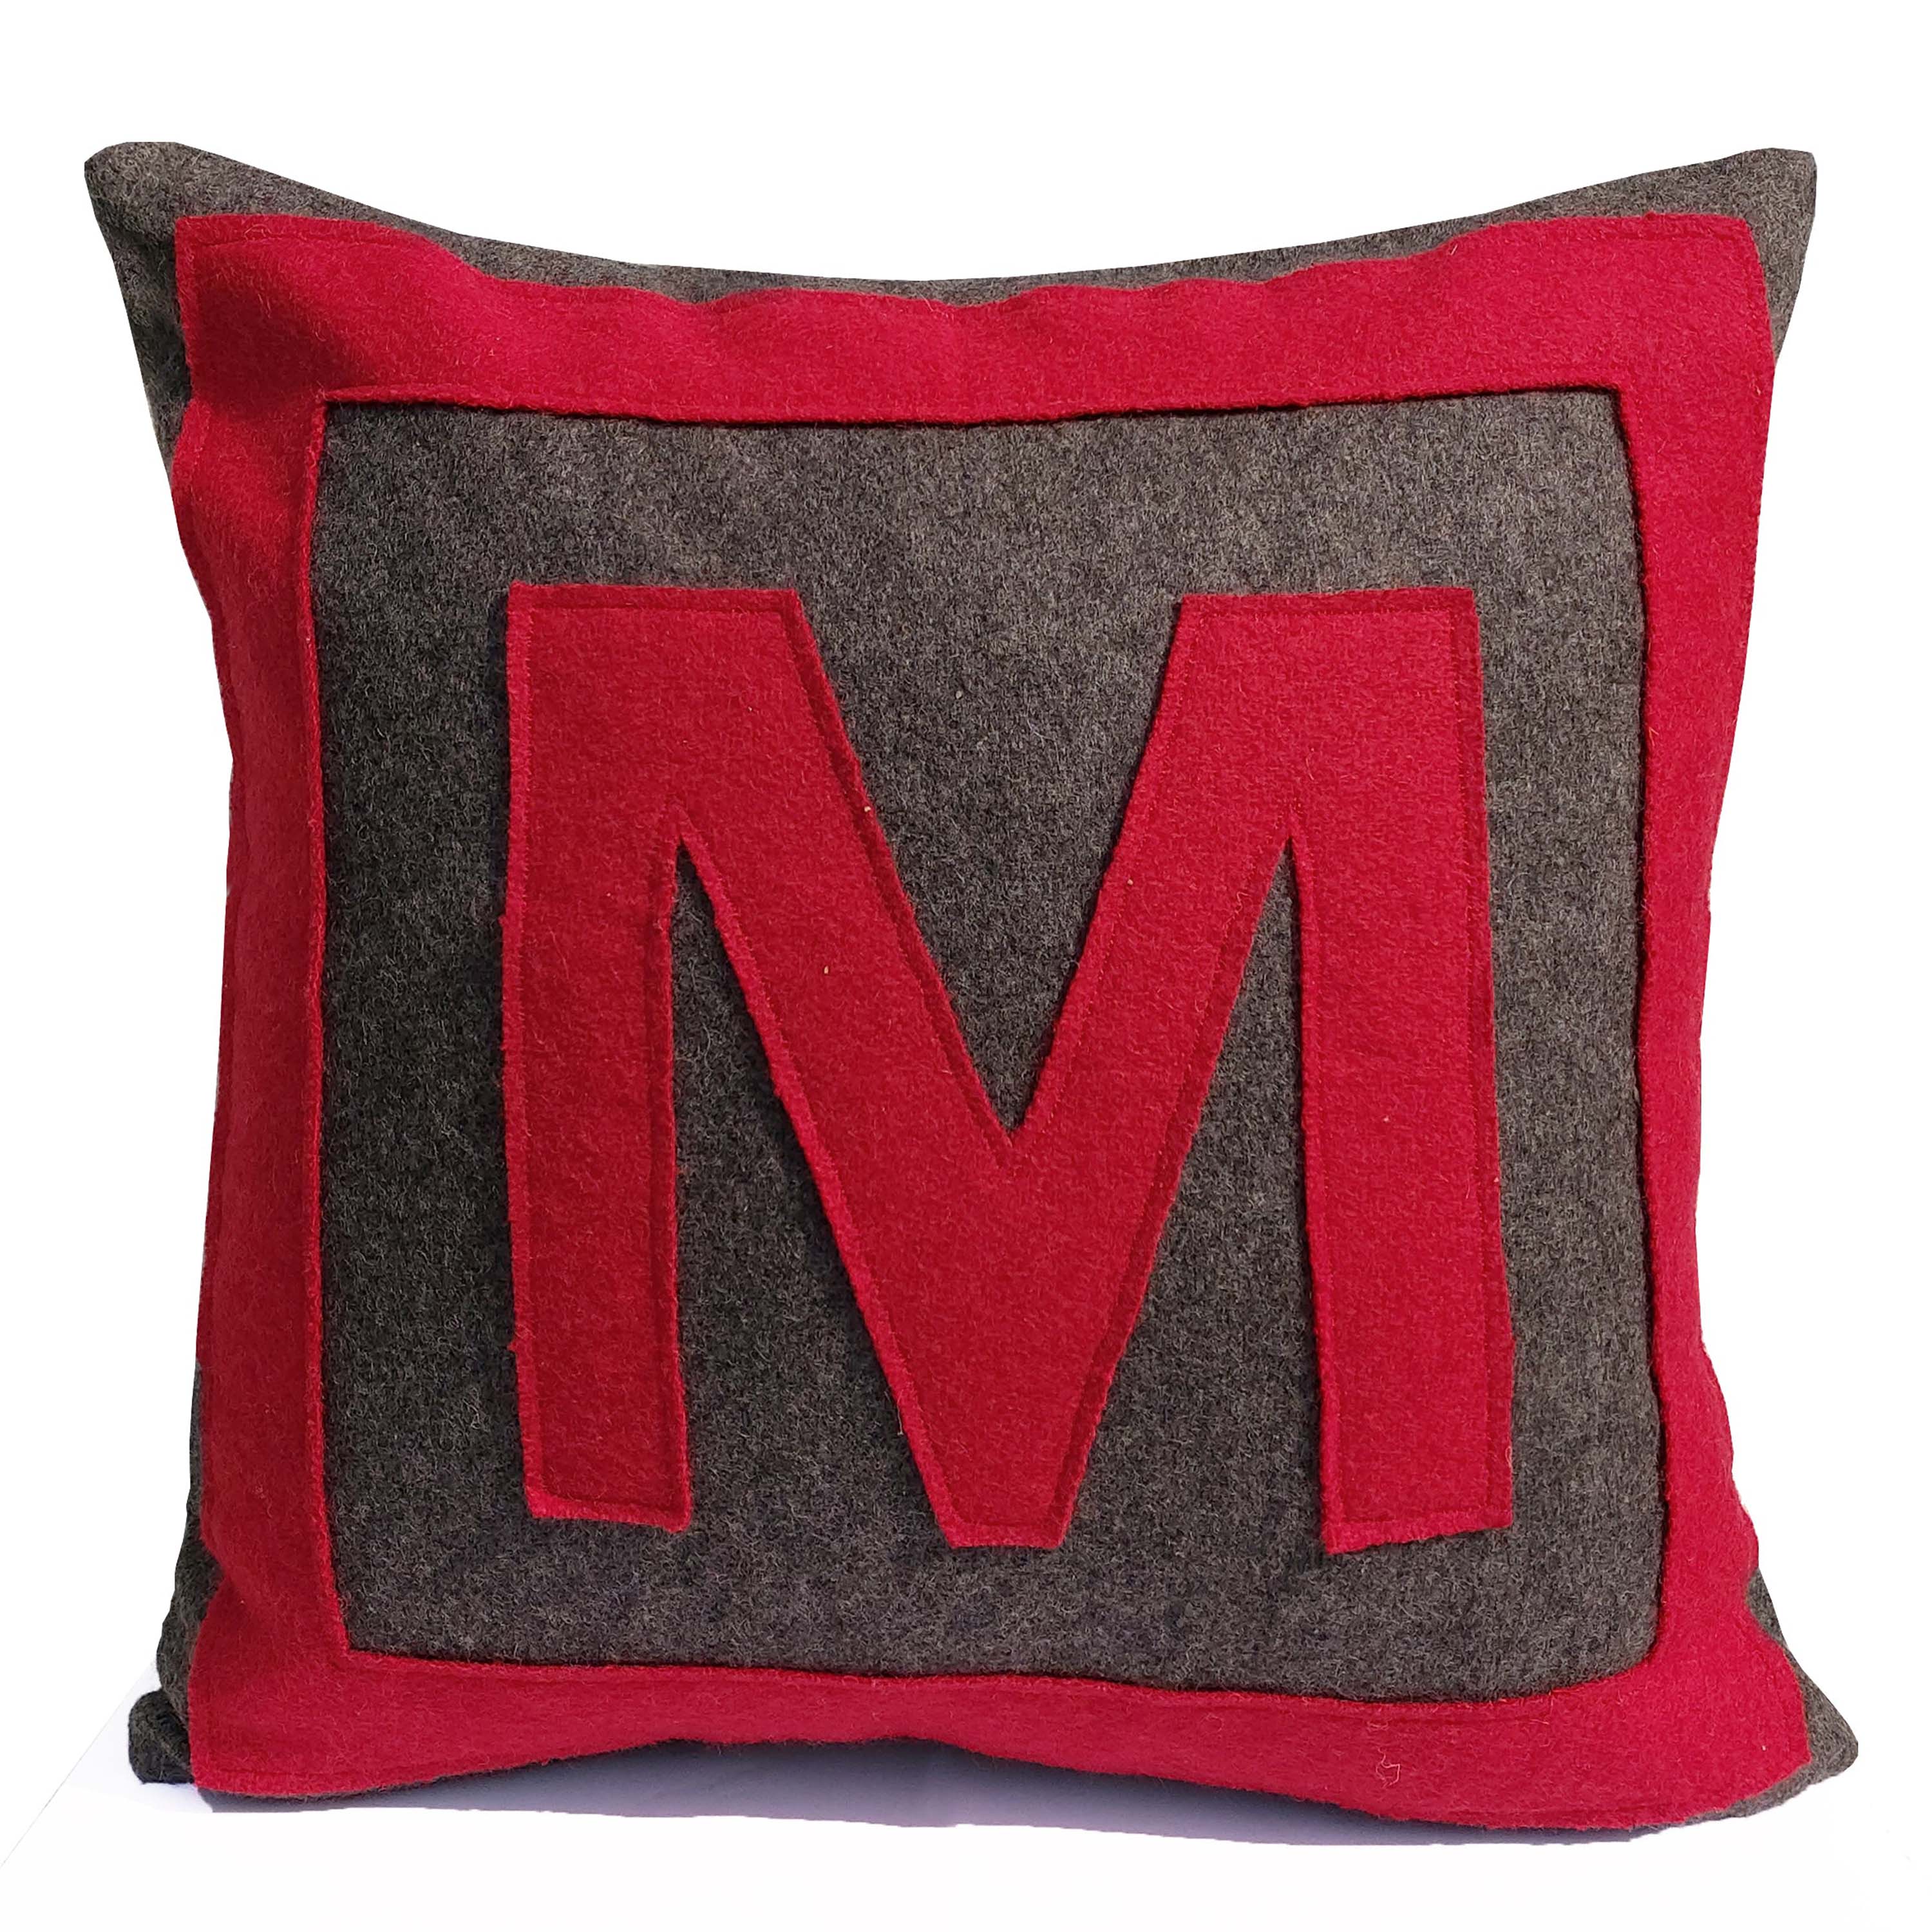 Personalized Felt Monogram Pillow Cover, Large Block Letter Pillow Case